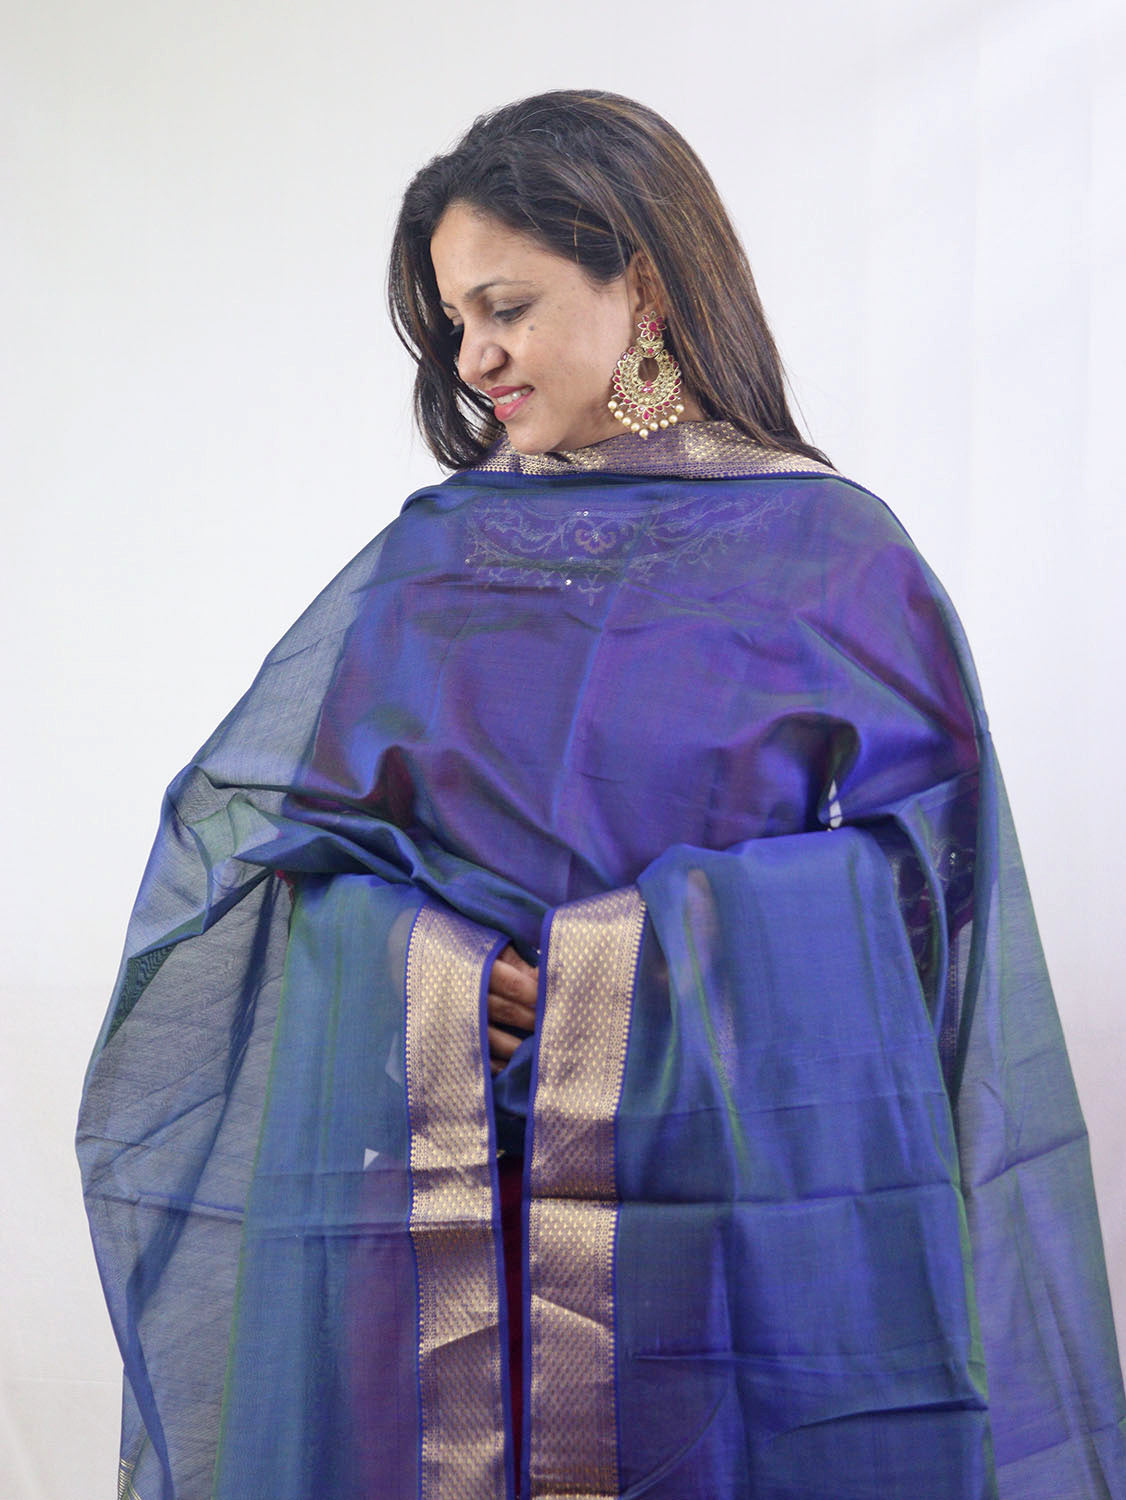 Stunning Blue Maheshwari Silk Cotton Dupatta - Handloom Woven - Luxurion World